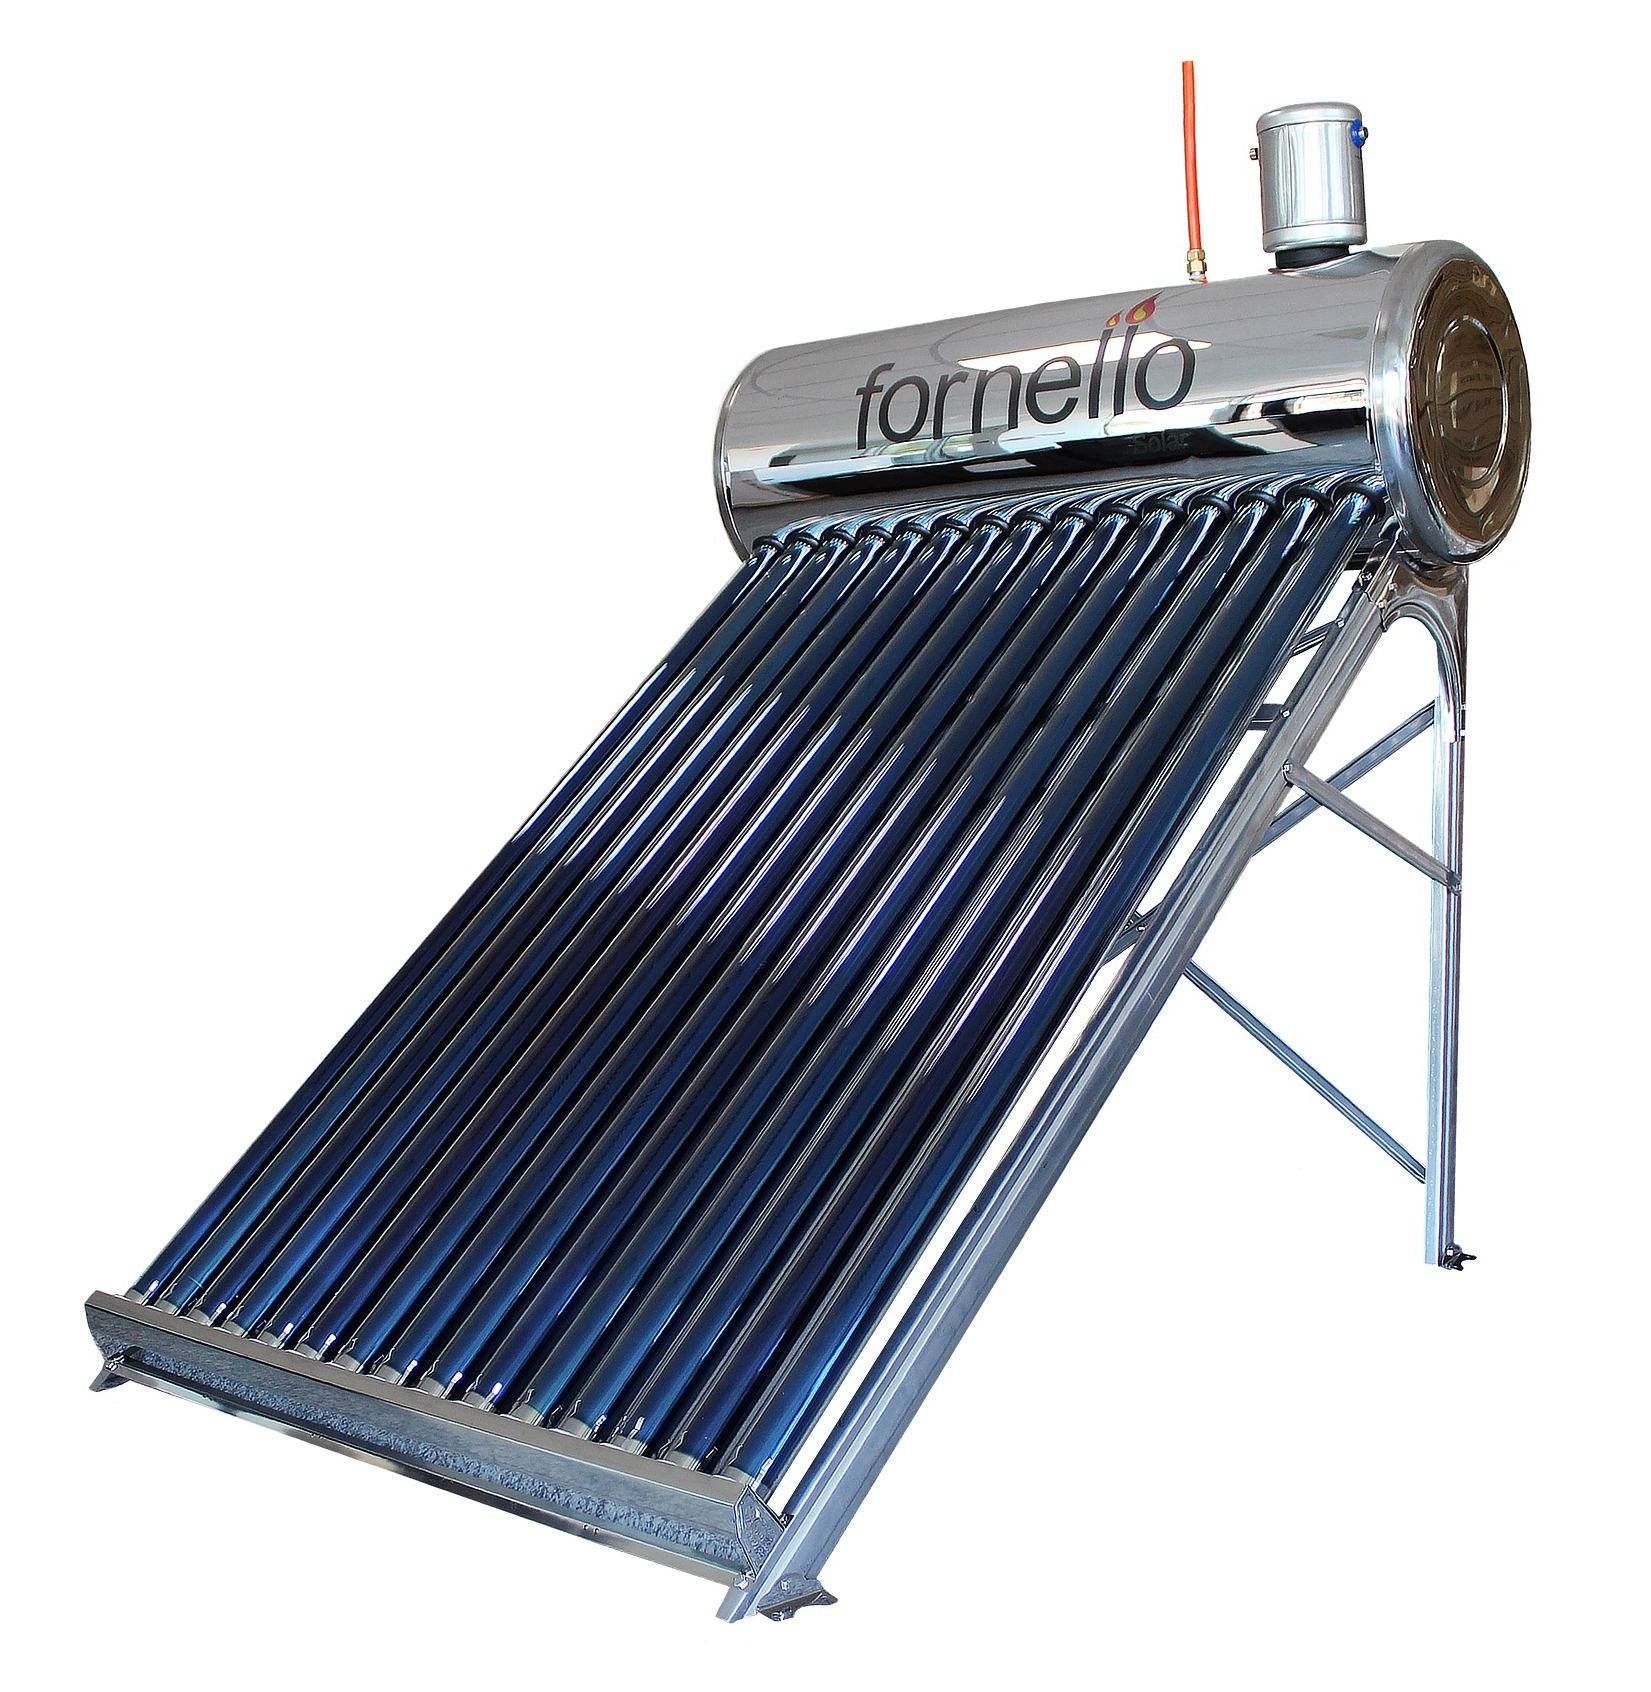 Panou solar nepresurizat Fornello pentru producere apa calda, cu rezervor inox 150 litri si 18 tuburi vidate